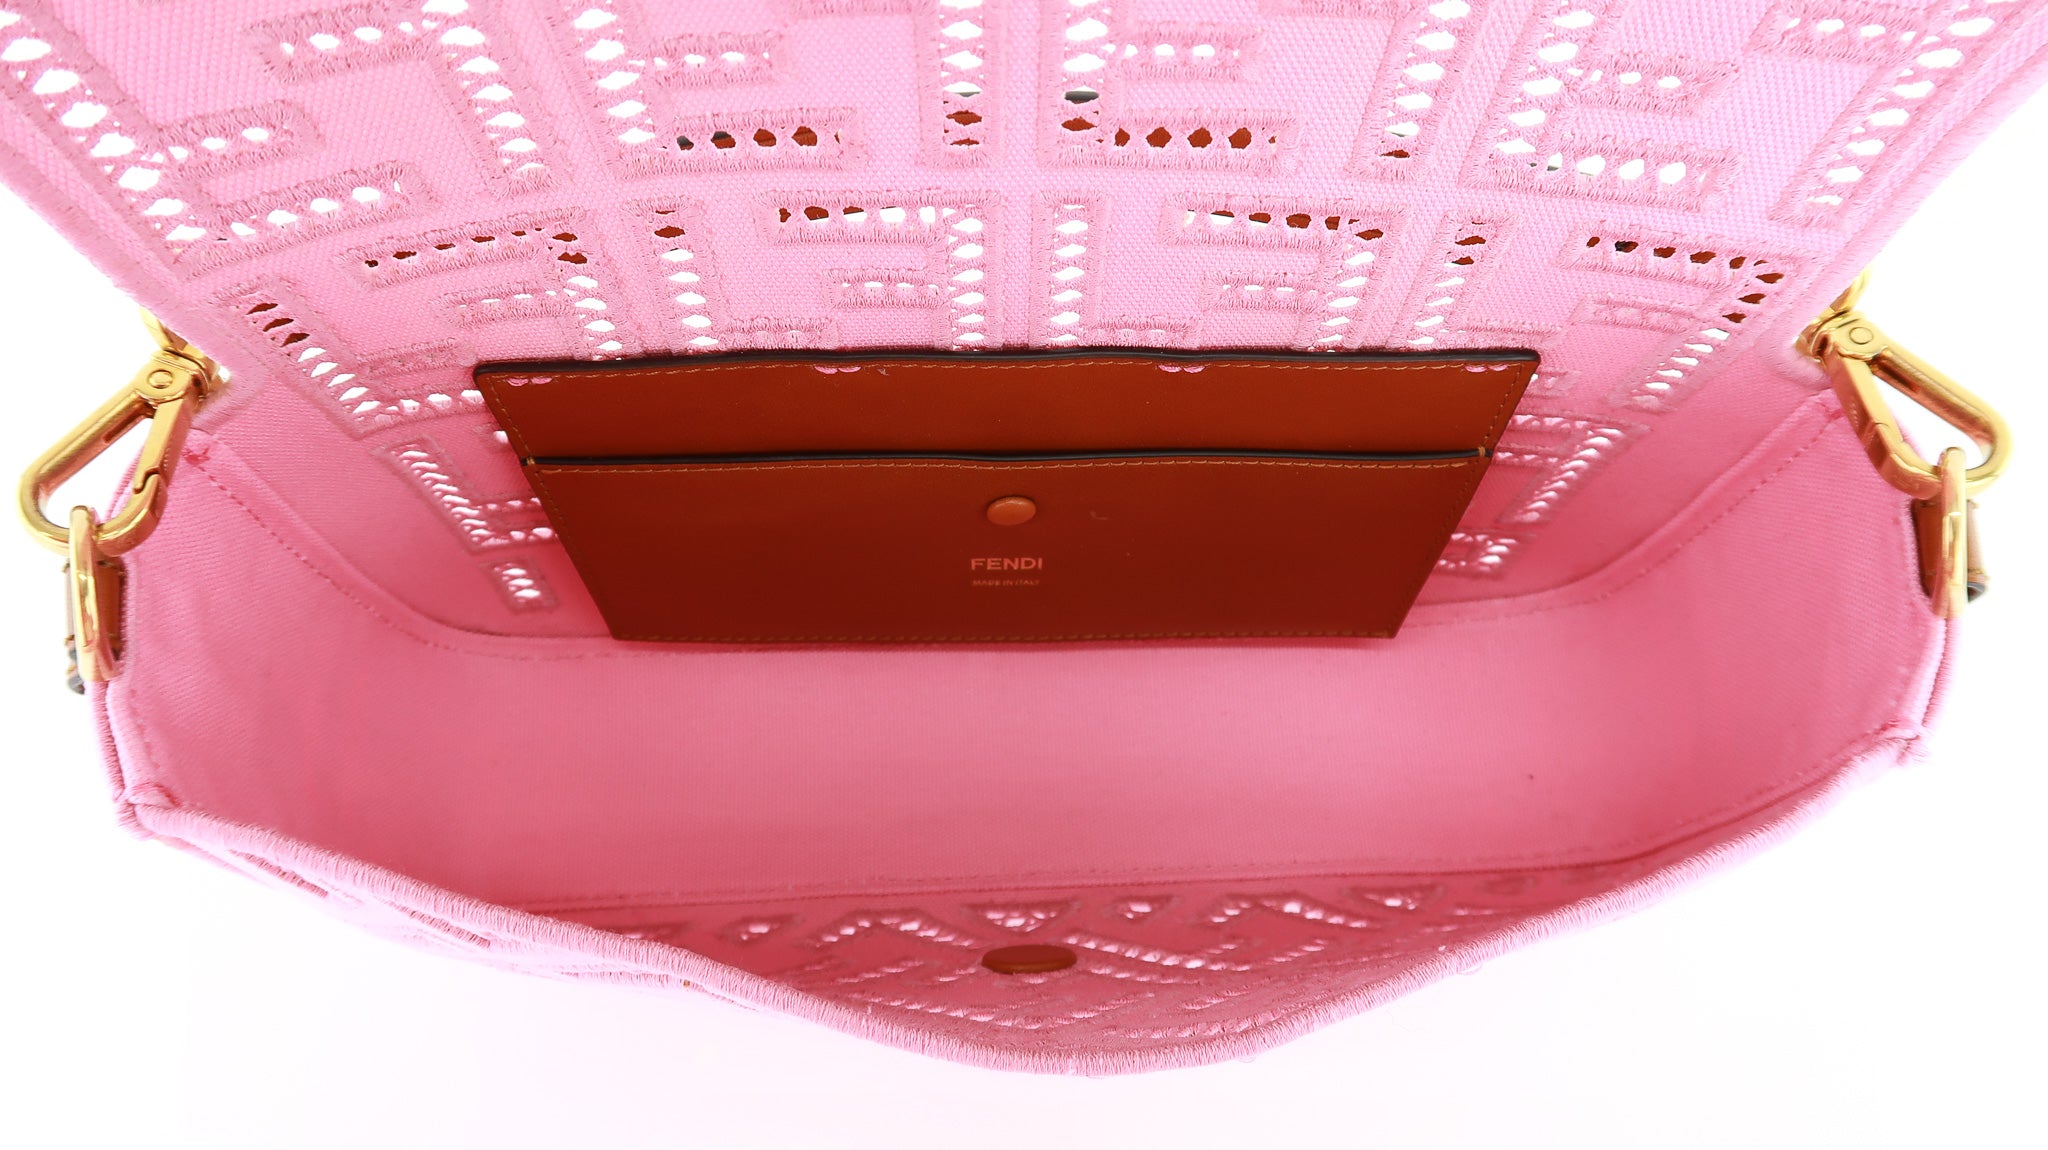 Fendi Baguette NM Embroidered FF Pink Canvas Shoulder Bag – DAC